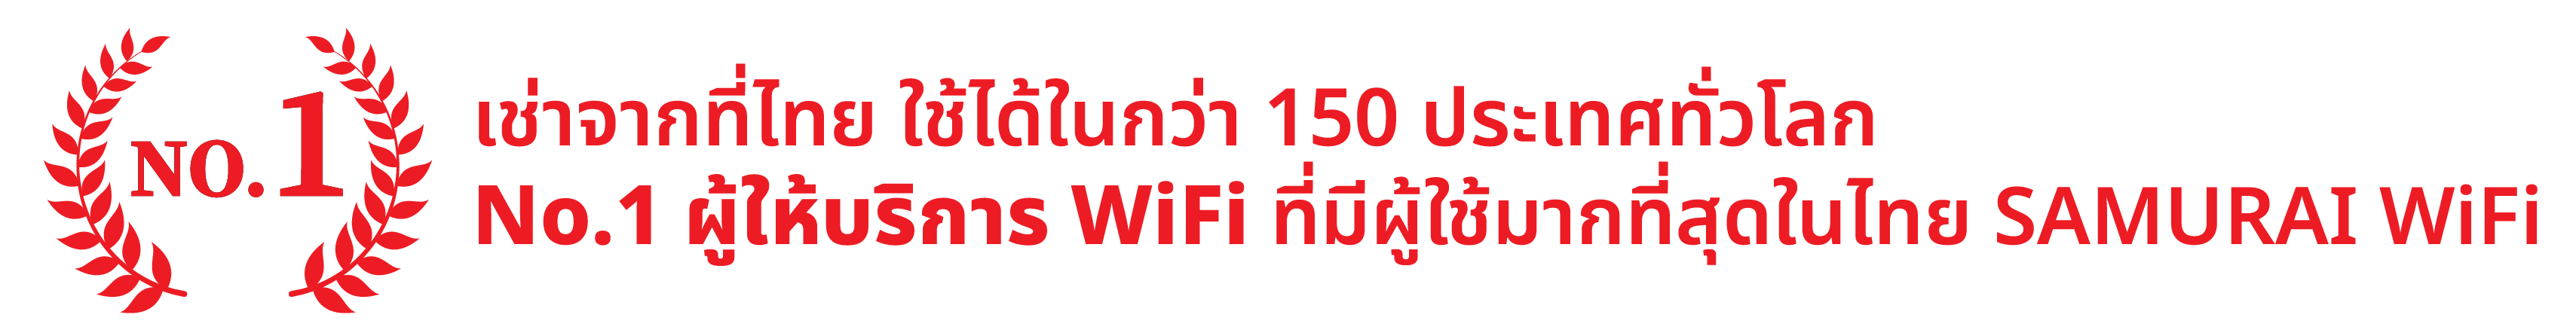 อันดับ 1 ที่มีผู้ใช้บริการมากที่สุด SAMURAI WiFi ผู้ให้บริการให้เช่า Wifi ที่สามารถใช้ได้มากกว่า 150 ประเทศทั่วโลก